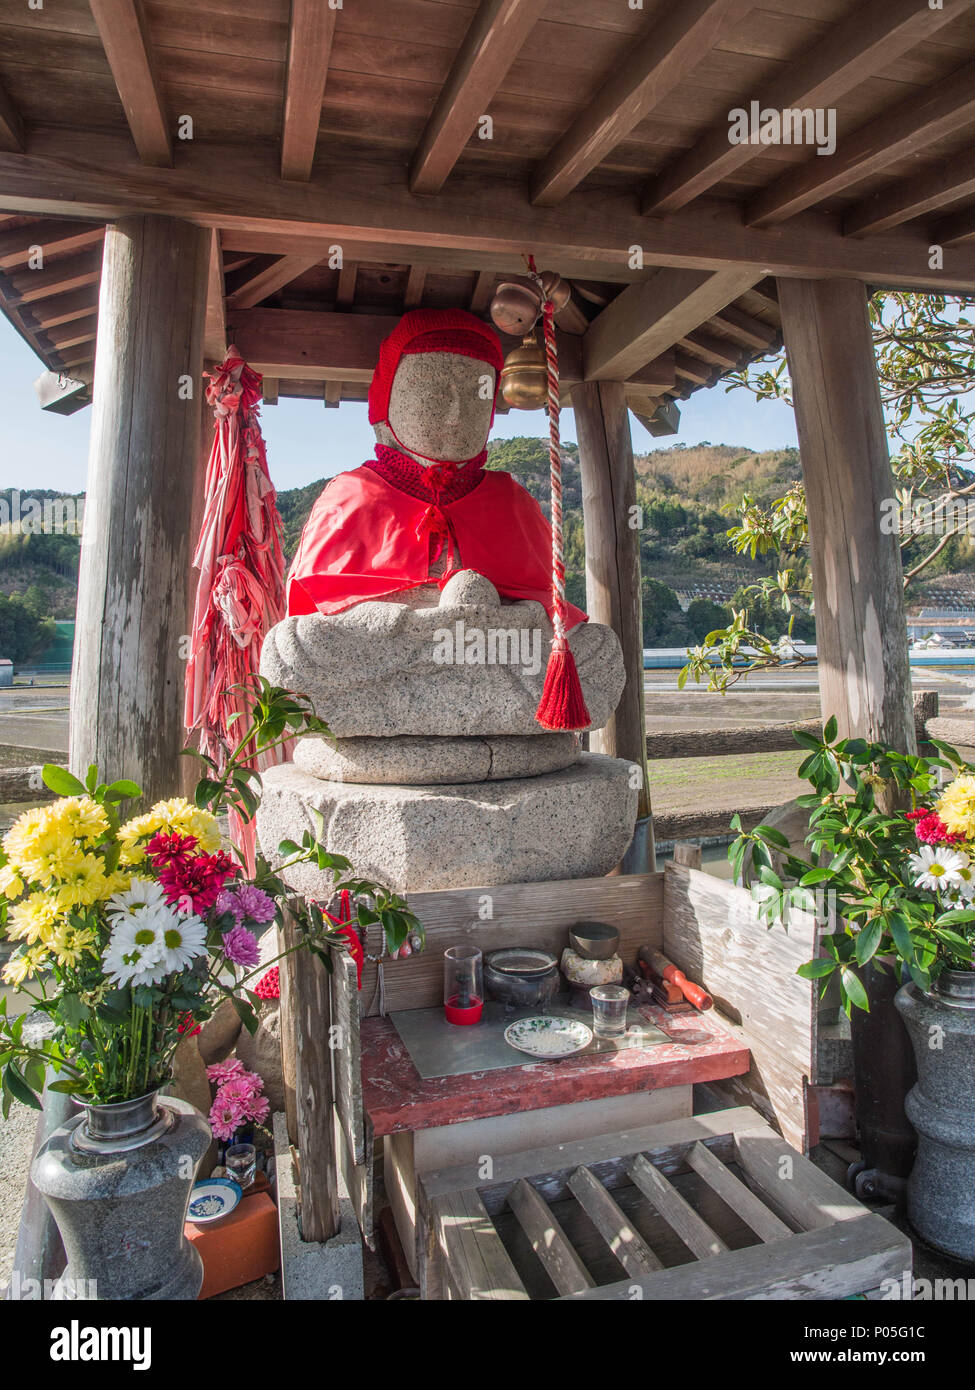 Route de culte, henro no michi sentier de pèlerin, statue Jizo Bosatsu en robes rouges, avec des offrandes, Kochi, Shikoku, Japon Banque D'Images